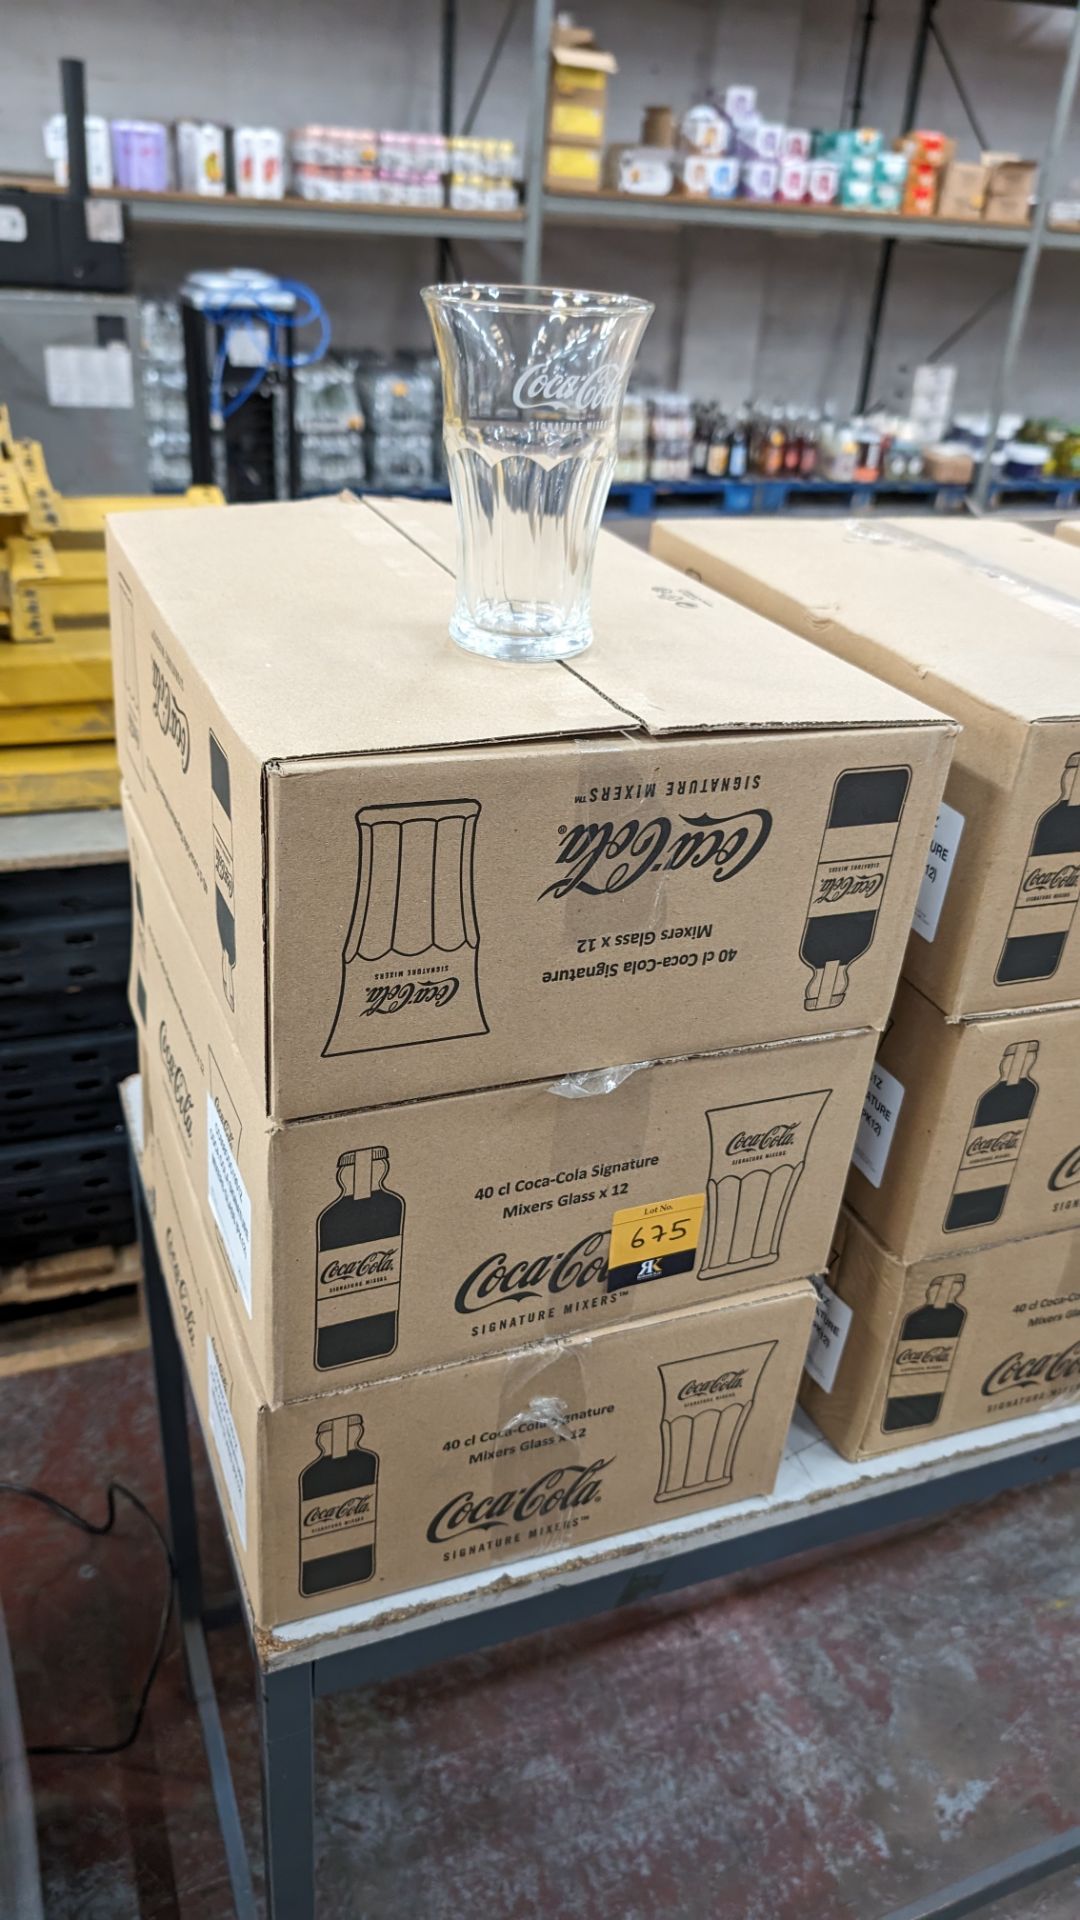 36 off Coca Cola 40cl Signature mixers glasses - 3 cartons